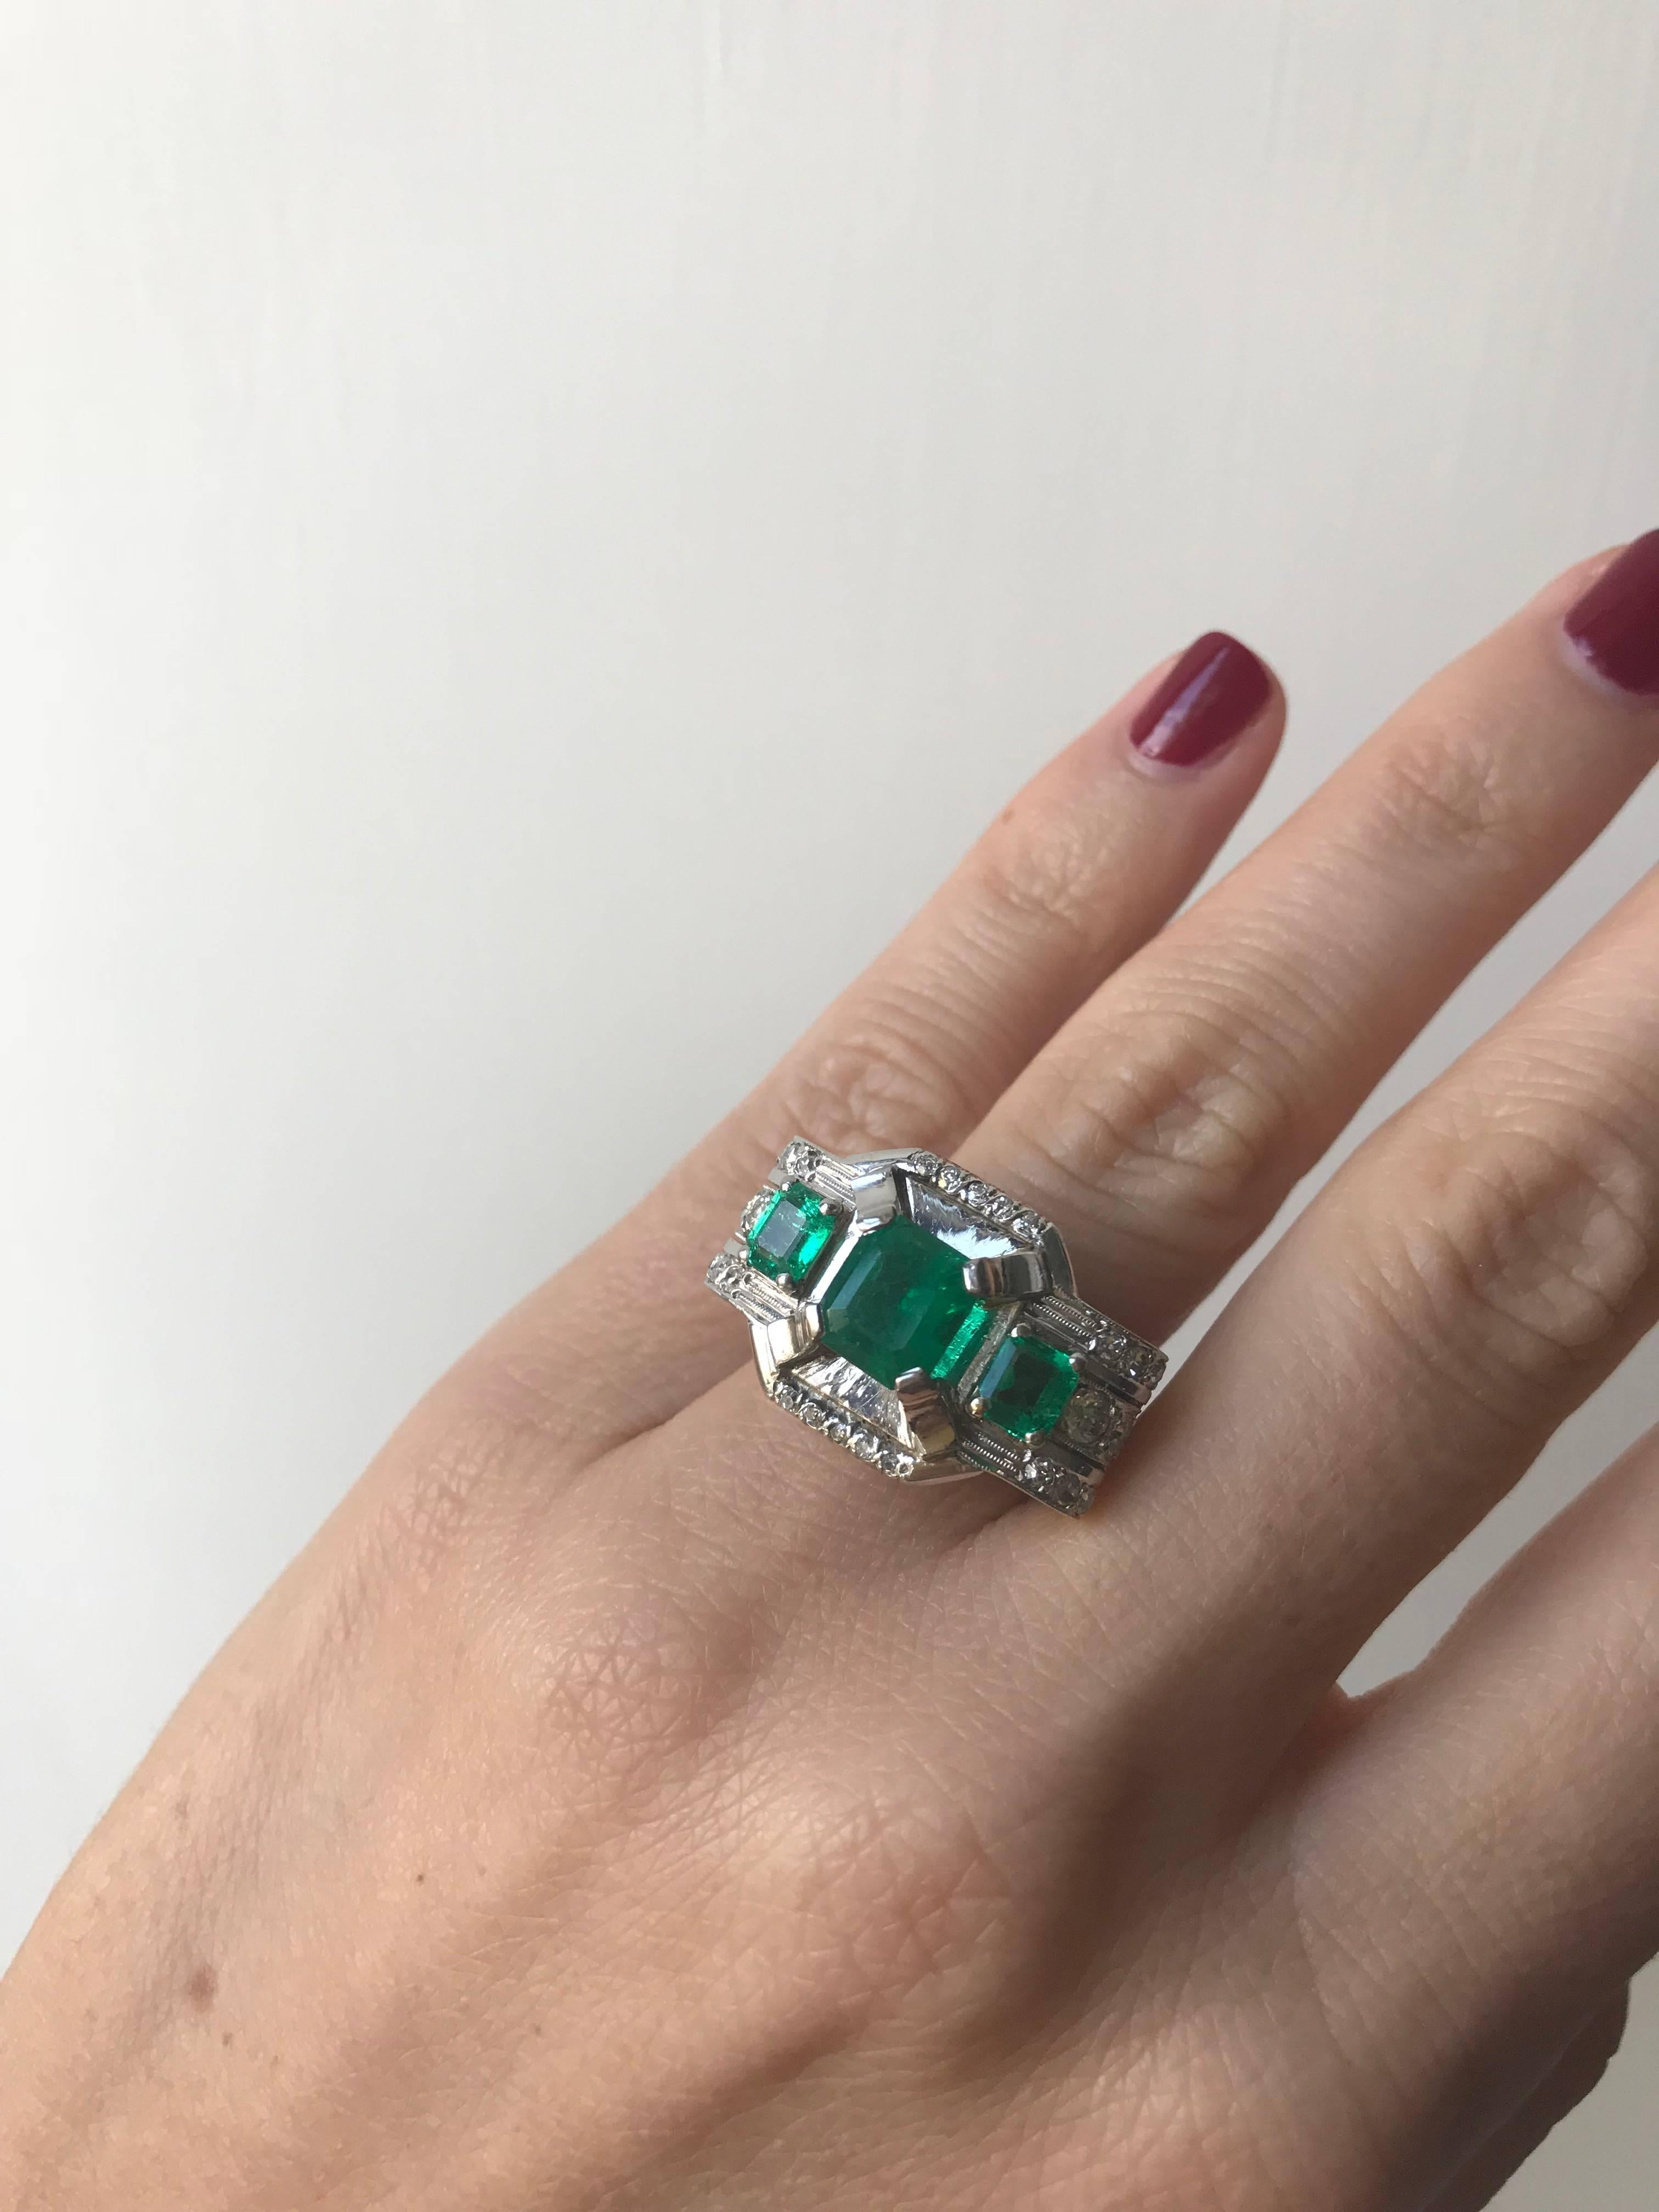 Art Deco Emerald Diamond Platinum Ring 1